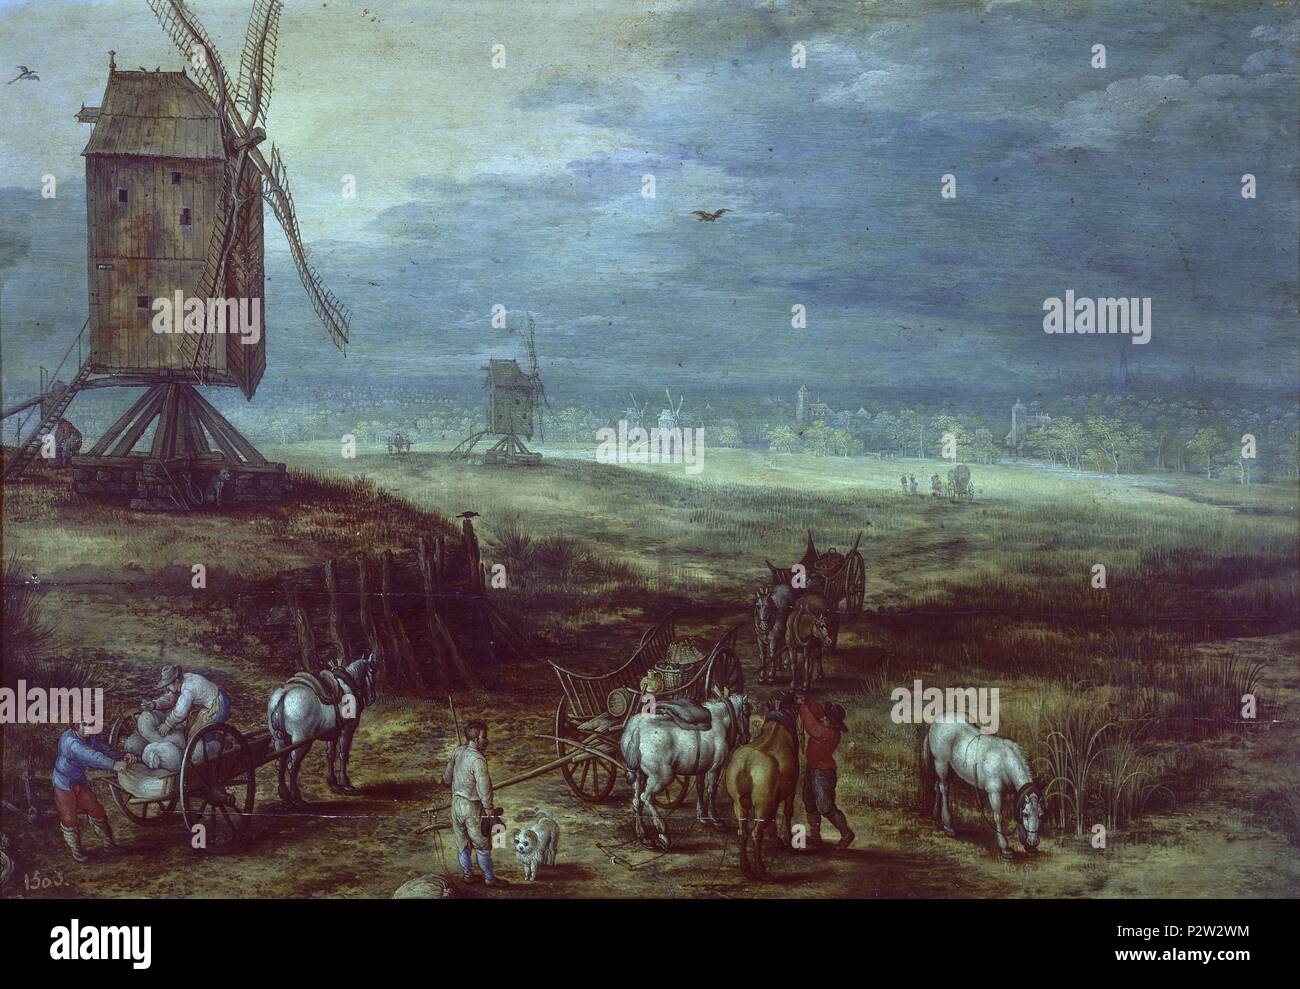 'Paysage avec moulins à vent', 1606-1608, École flamande, panneau, 34 cm x 50 cm, P01430. Auteur : Jan Brueghel l'ancien (1568-1625). Emplacement : Museo del Prado-PINTURA, MADRID, ESPAGNE. Banque D'Images